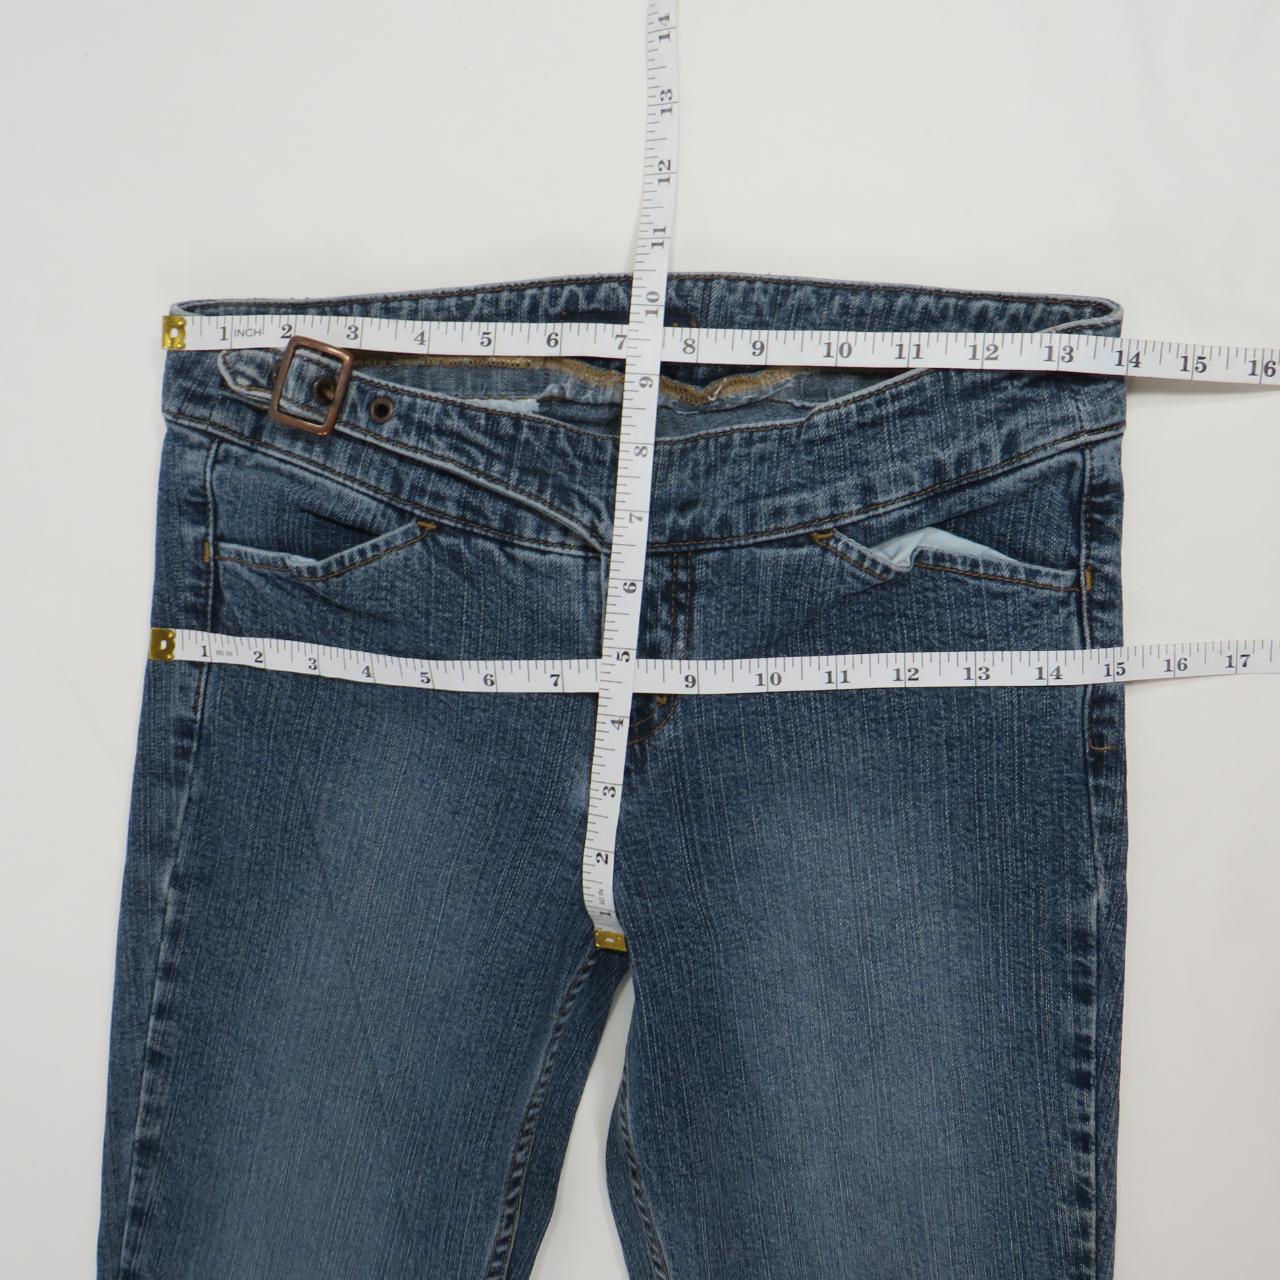 Vintage L.e.i. jeans with 2 front pockets and 1 back... - Depop